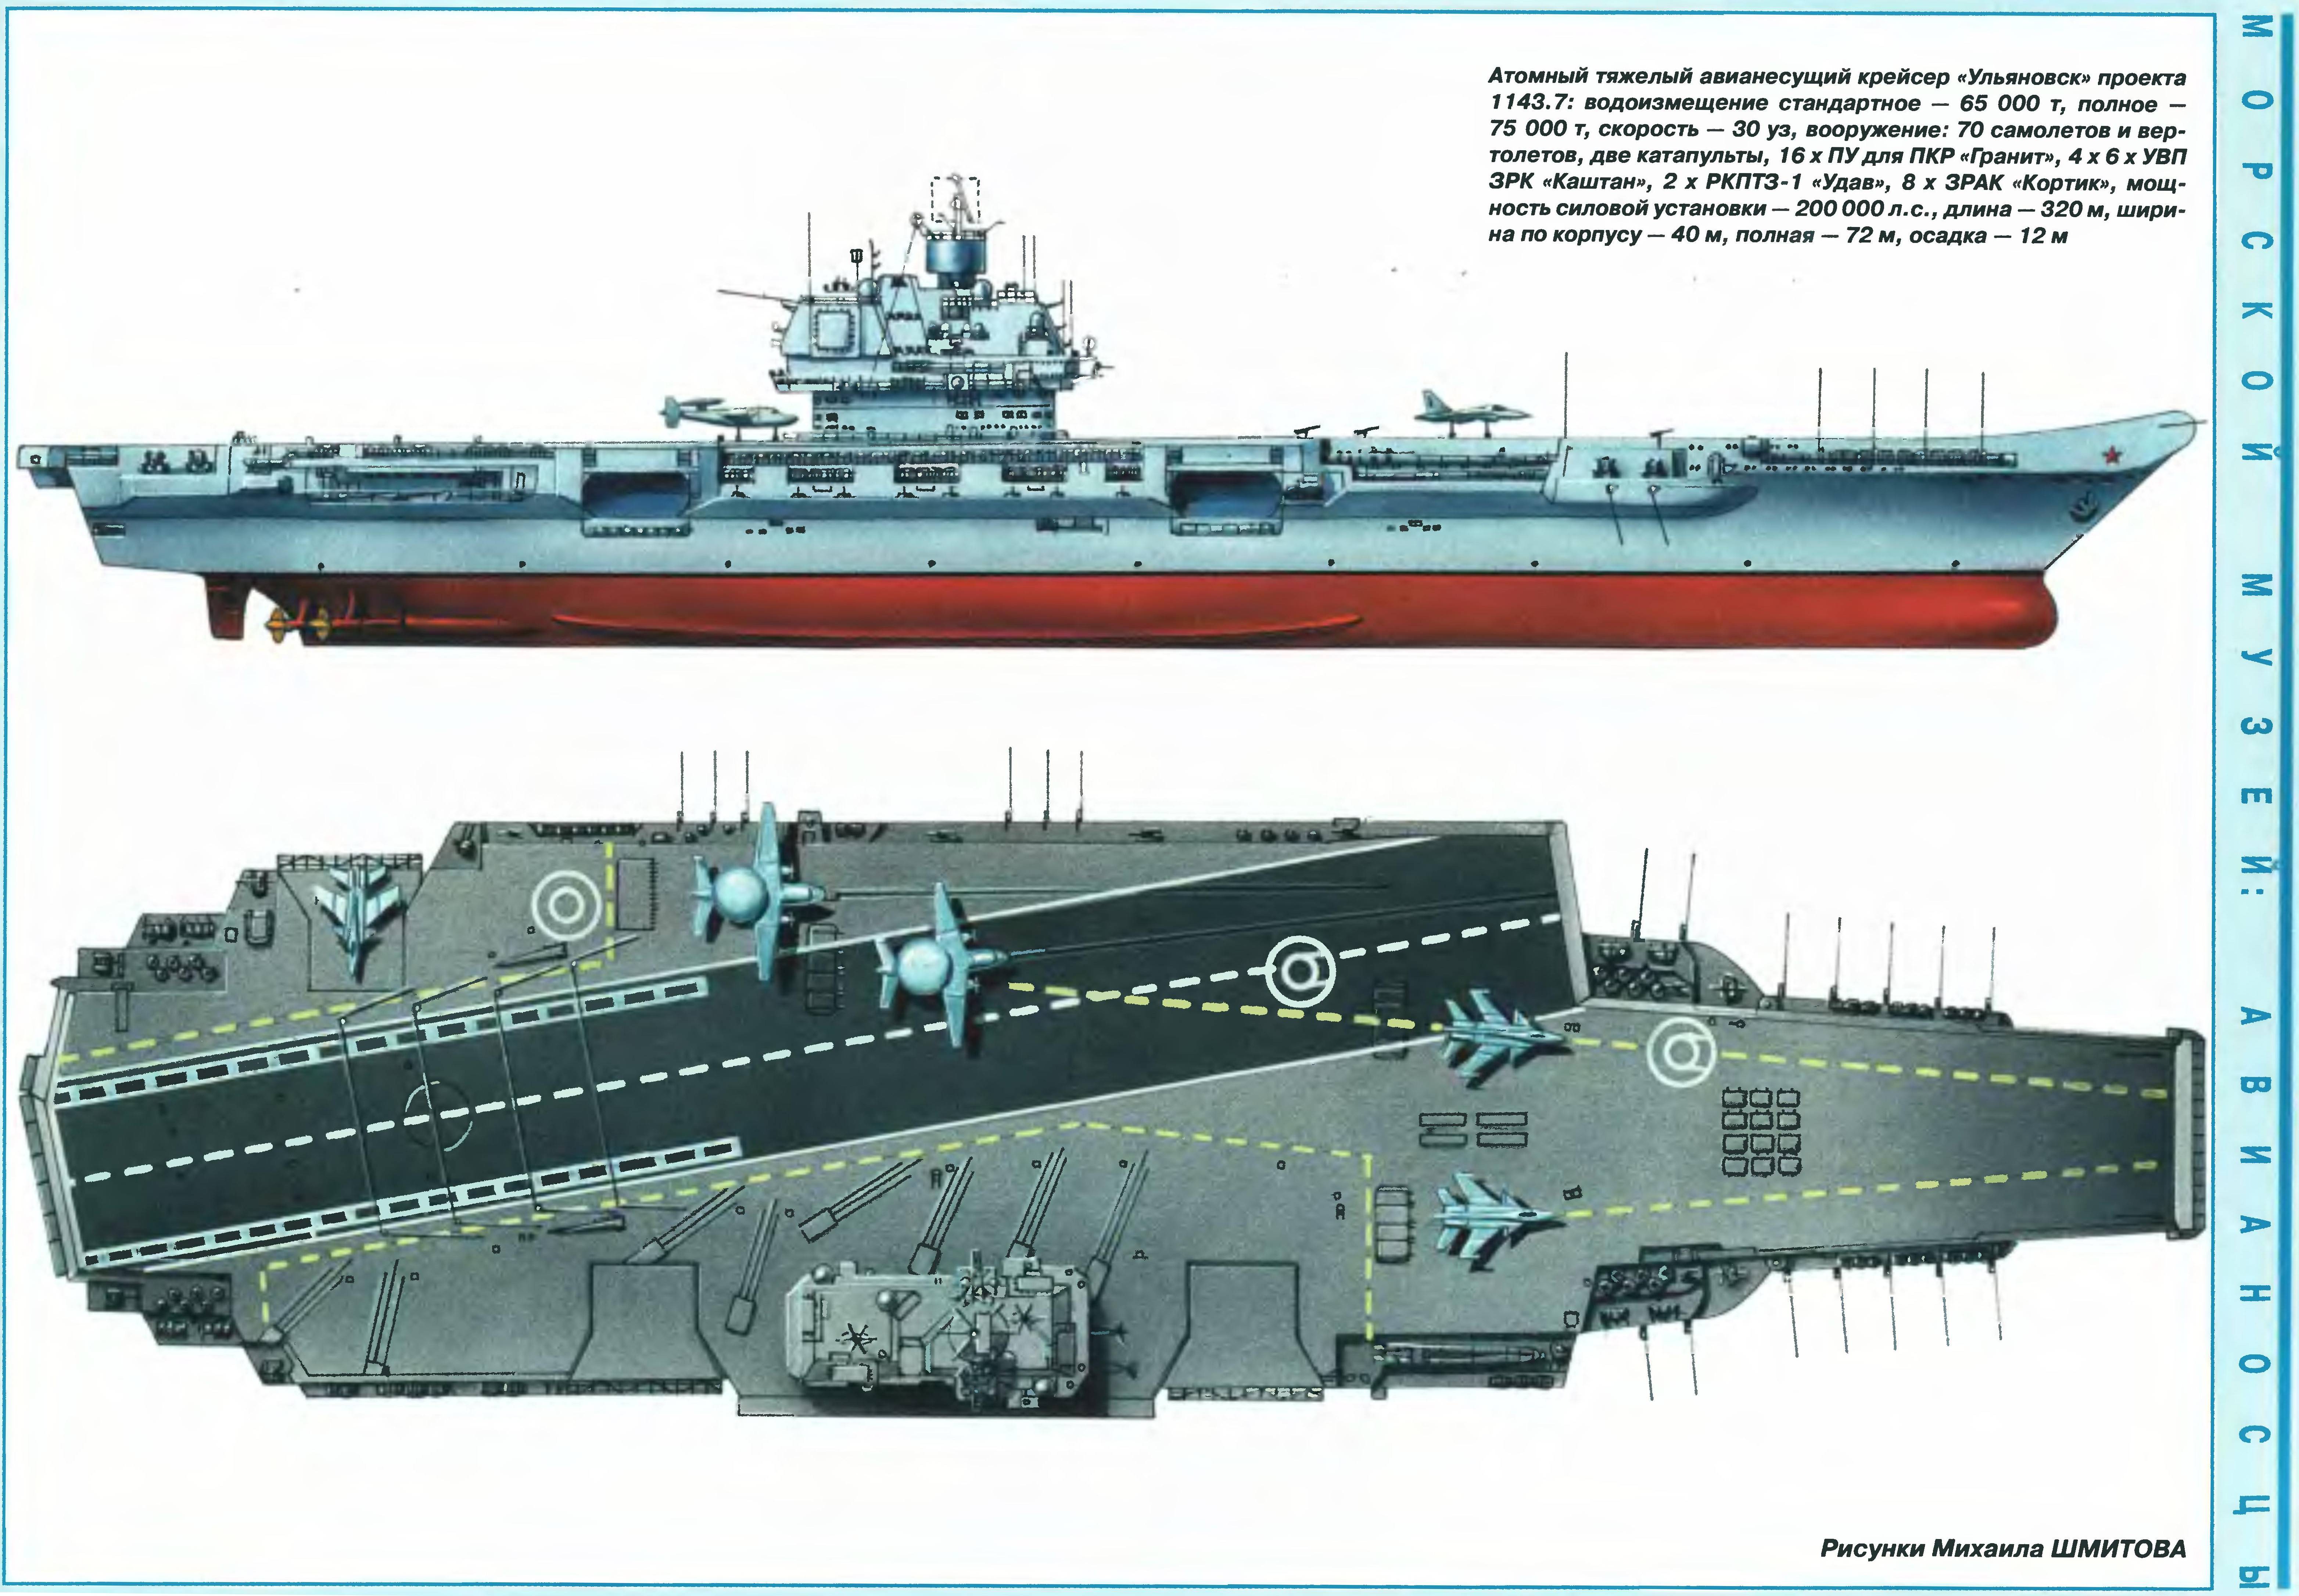 Тяжелый атомный авианесущий крейсер ульяновск пр. 11437. ударные корабли часть 1 авианесущие корабли. ракетно-артиллерийские корабли